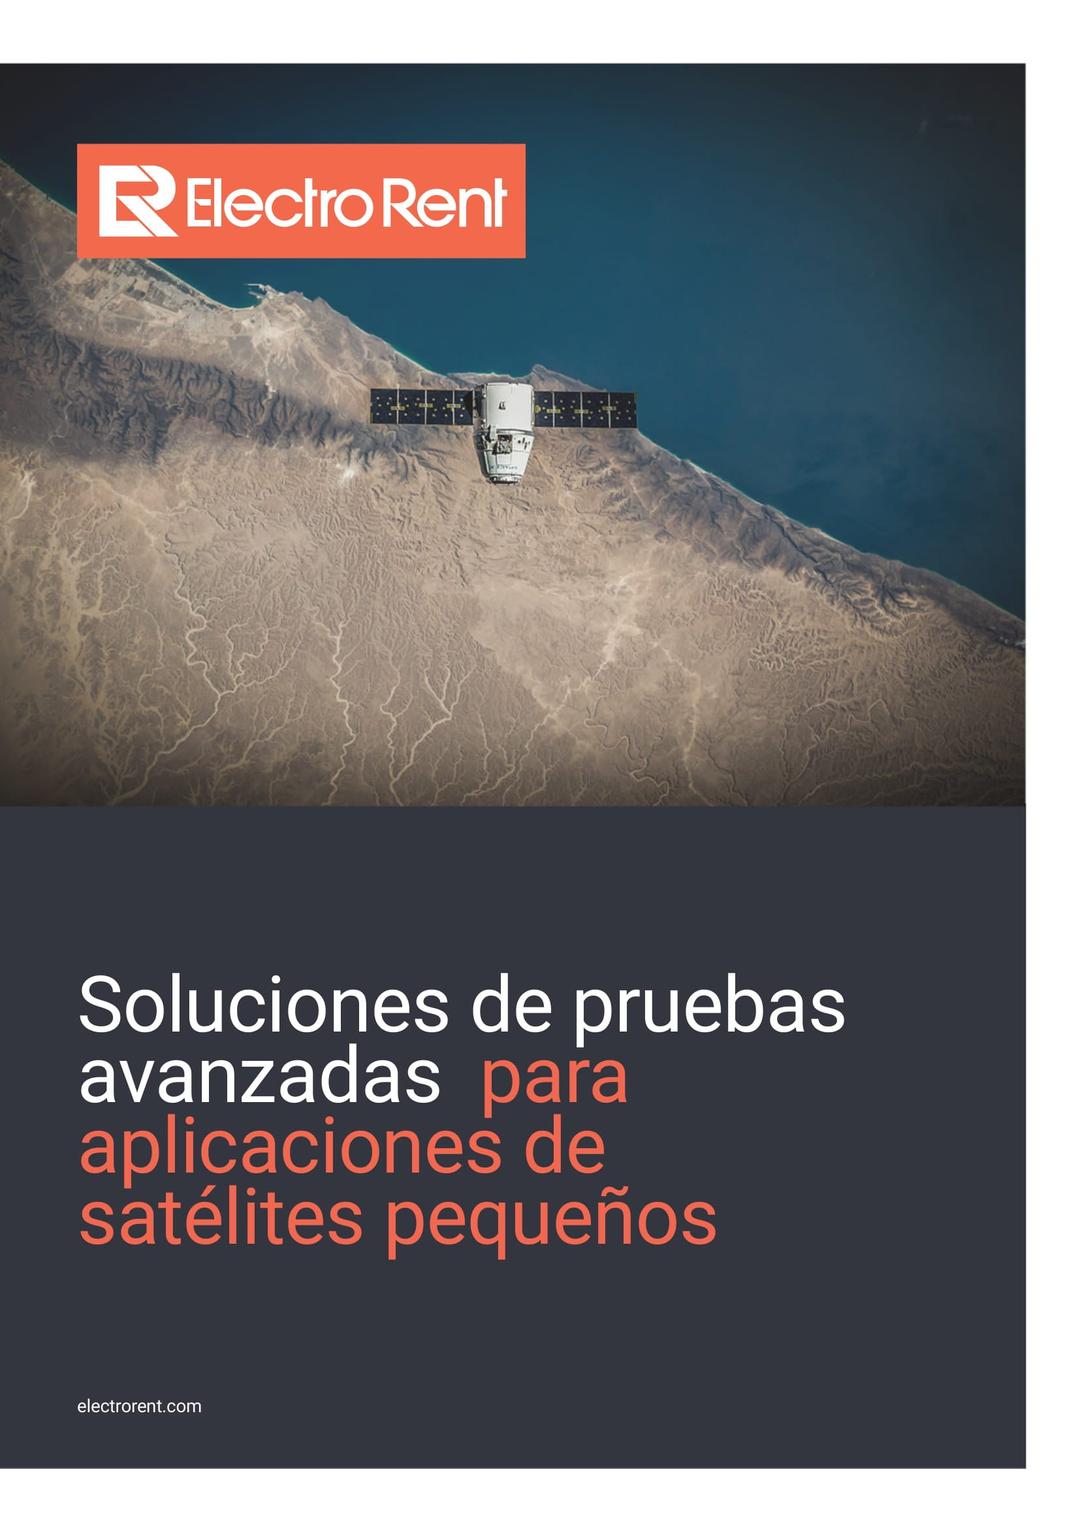 Soluciones de pruebas para aplicaciones de satélites, imagen